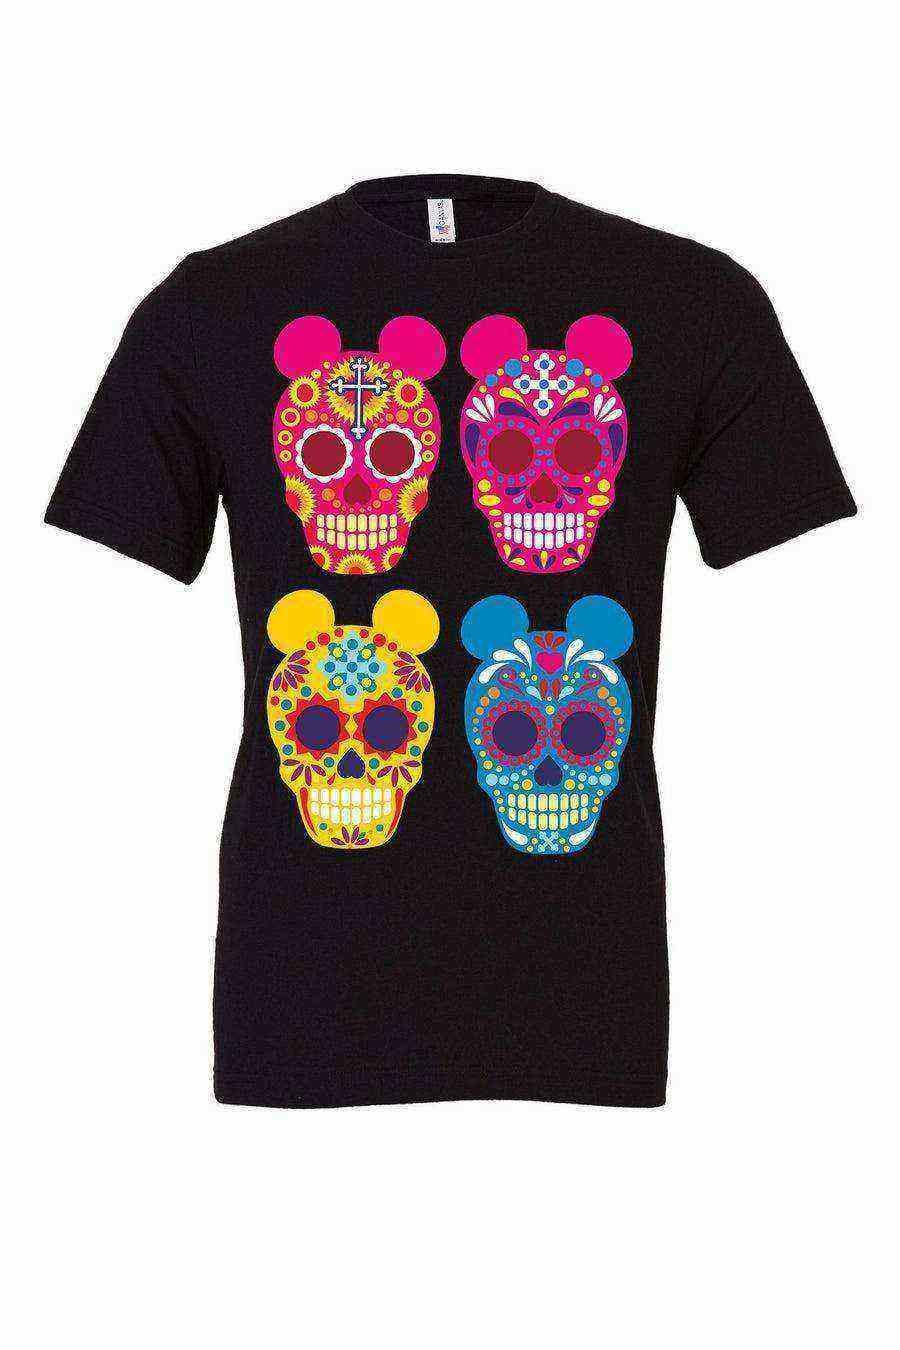 Toddler | Sugar Skull Mickey Shirt | Coco Shirt - Dylan's Tees